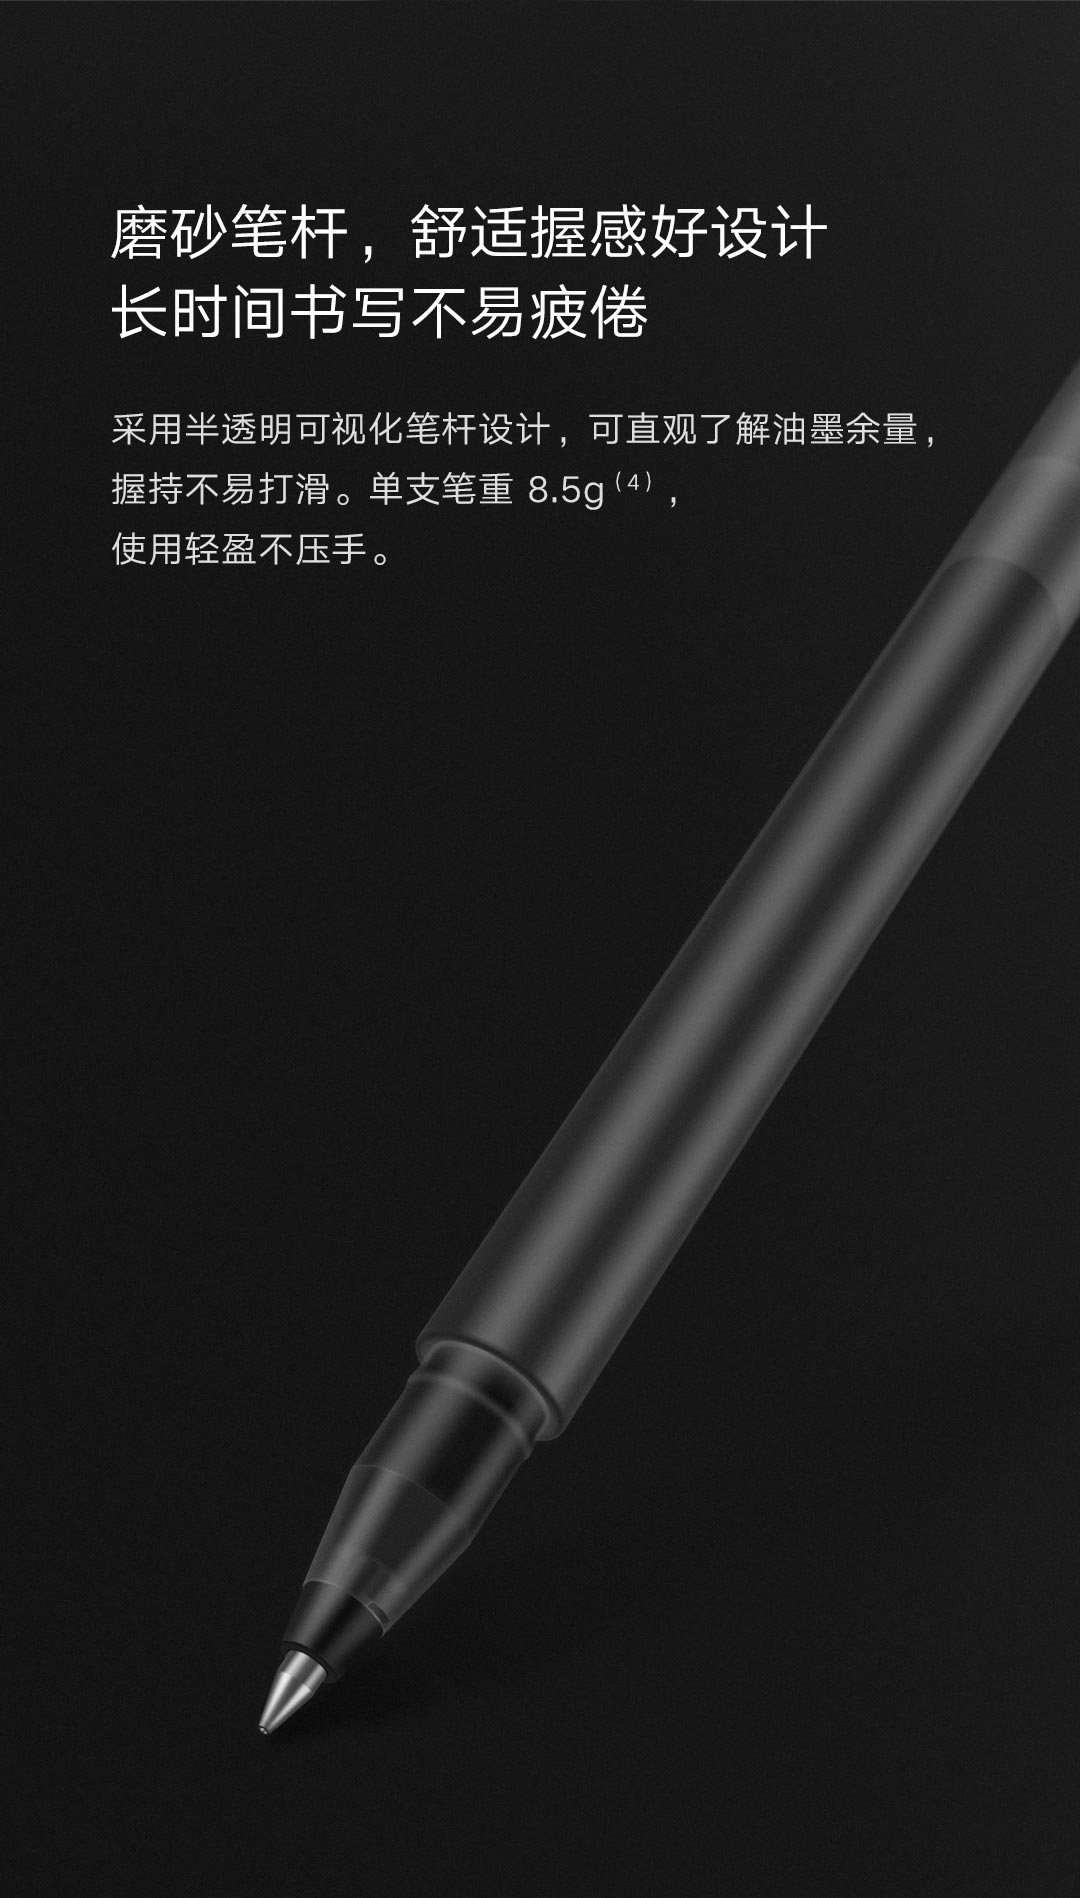 product_奇妙_小米巨能写中性笔10支装